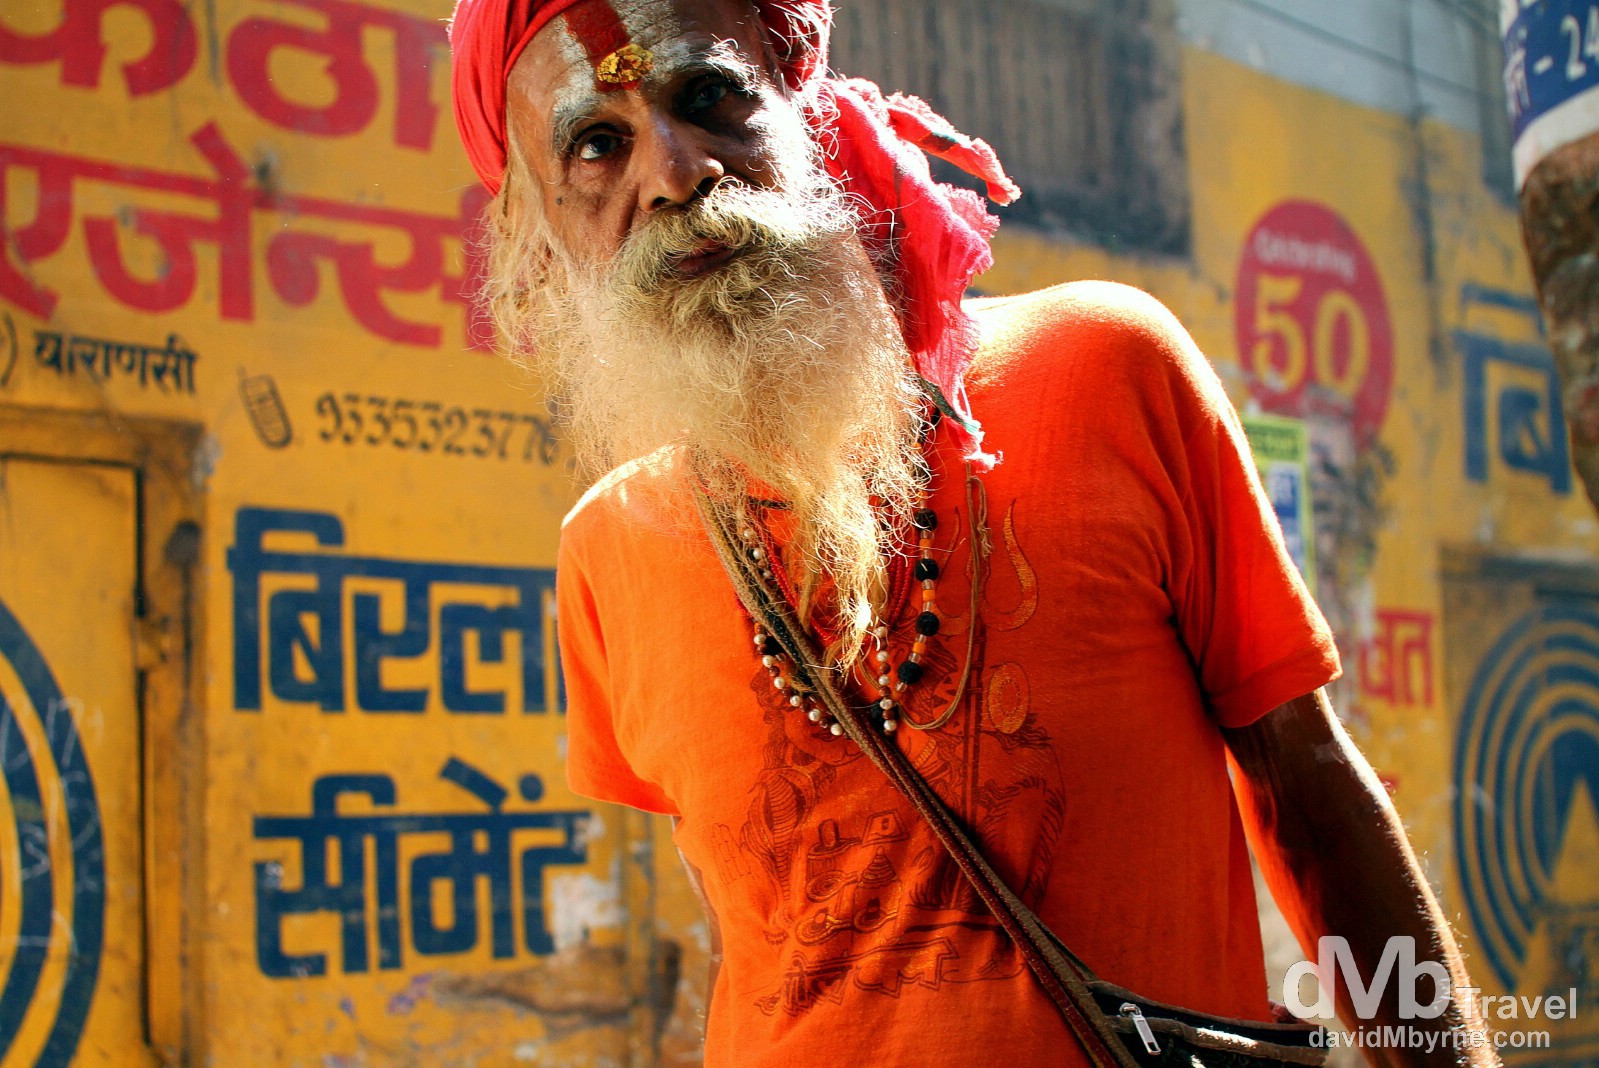 A sadhu, an ascetic Hindi holy man, in the narrow lanes of old town Varanasi, Uttar Pradesh, India. October 13th 2012.